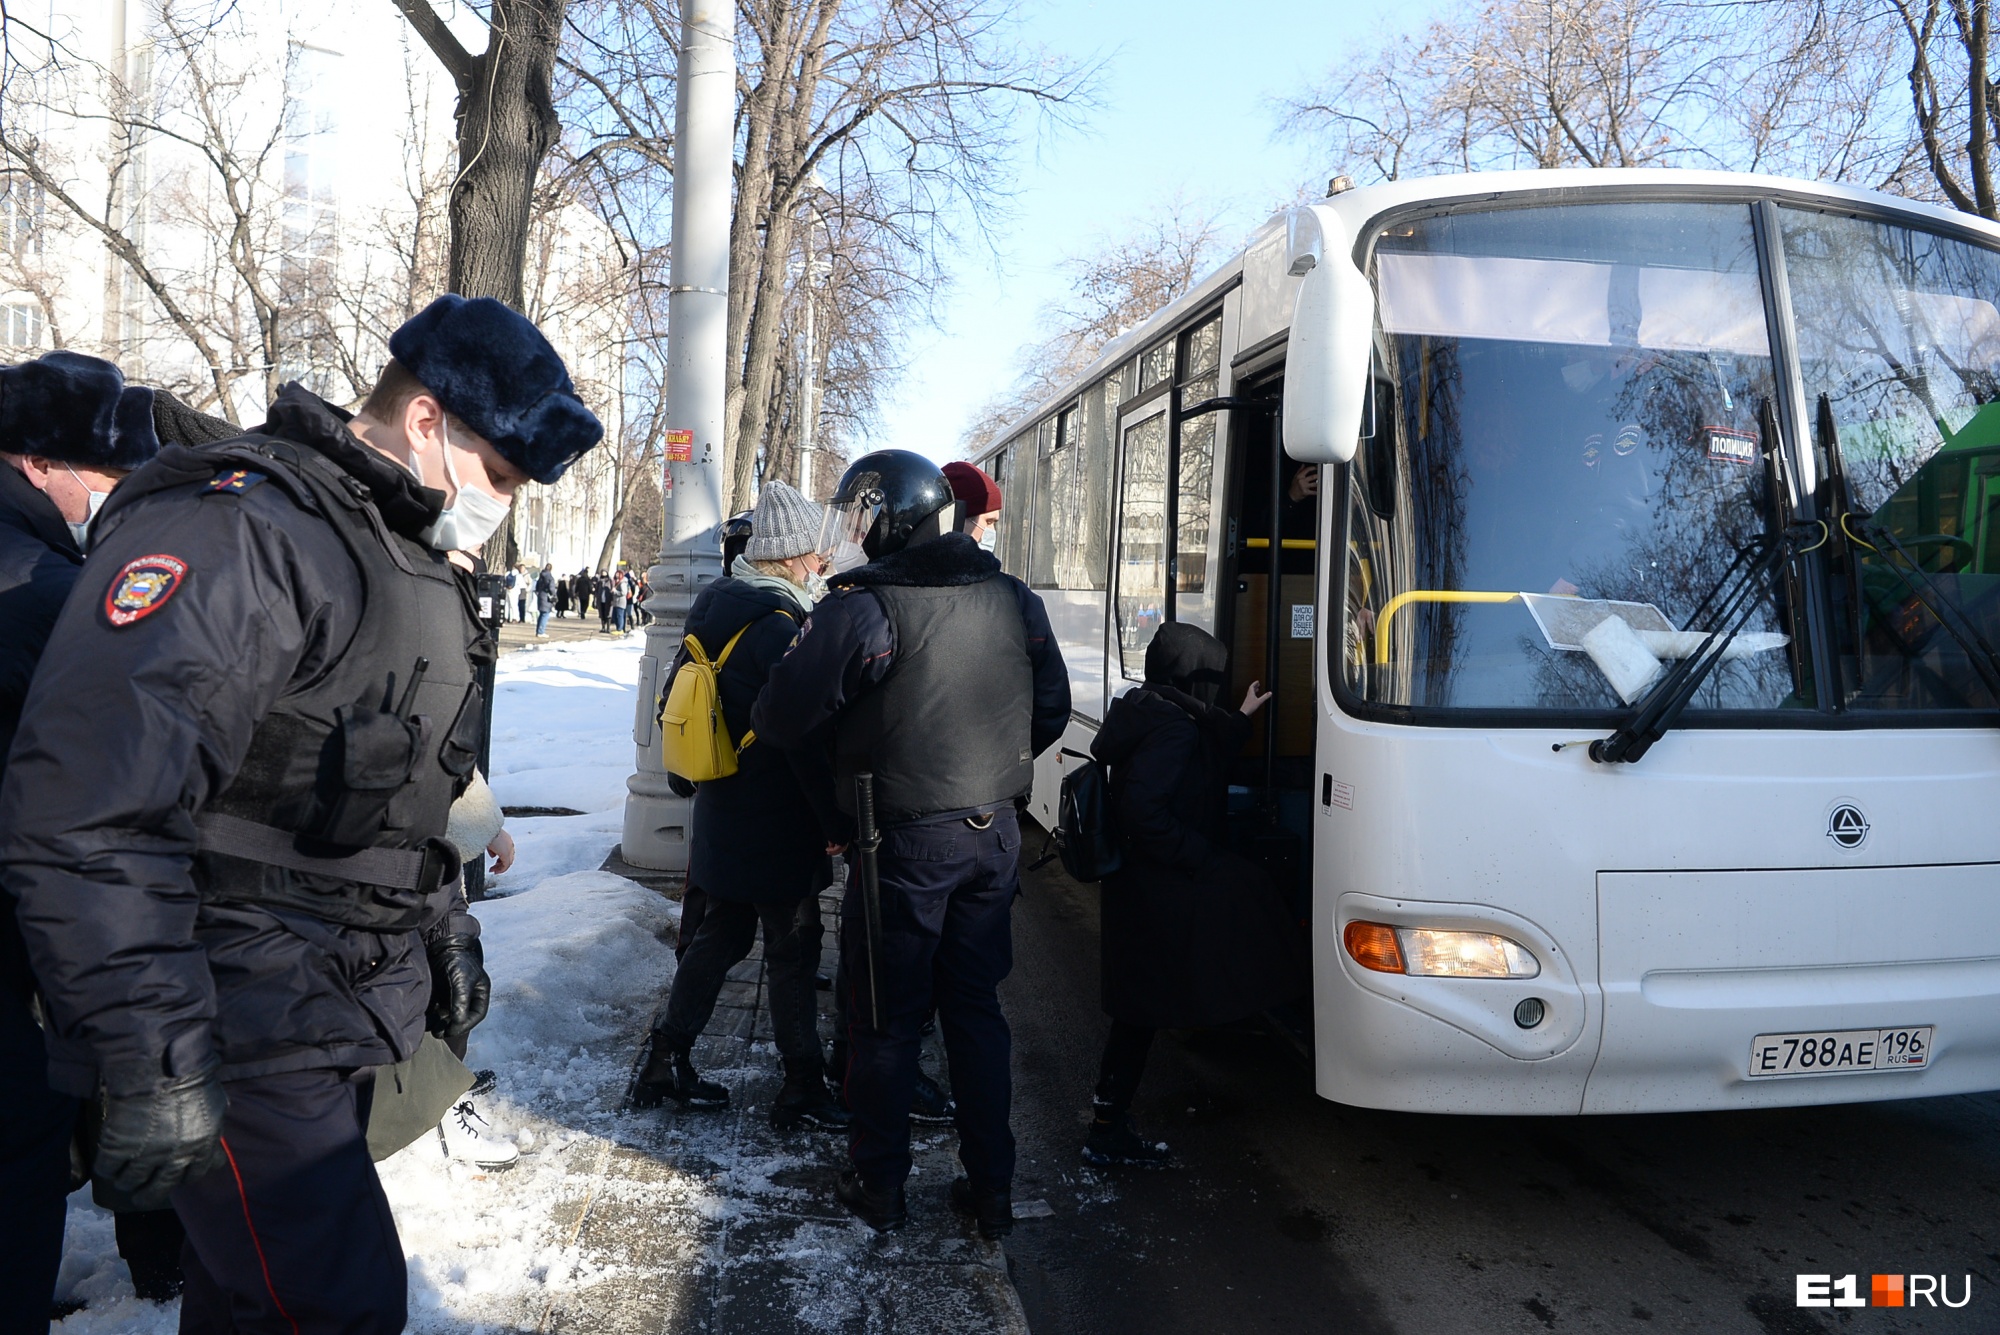 «Привозили целый автобус, но люди не влезли»: во время пикета в Екатеринбурге задержали десятки человек